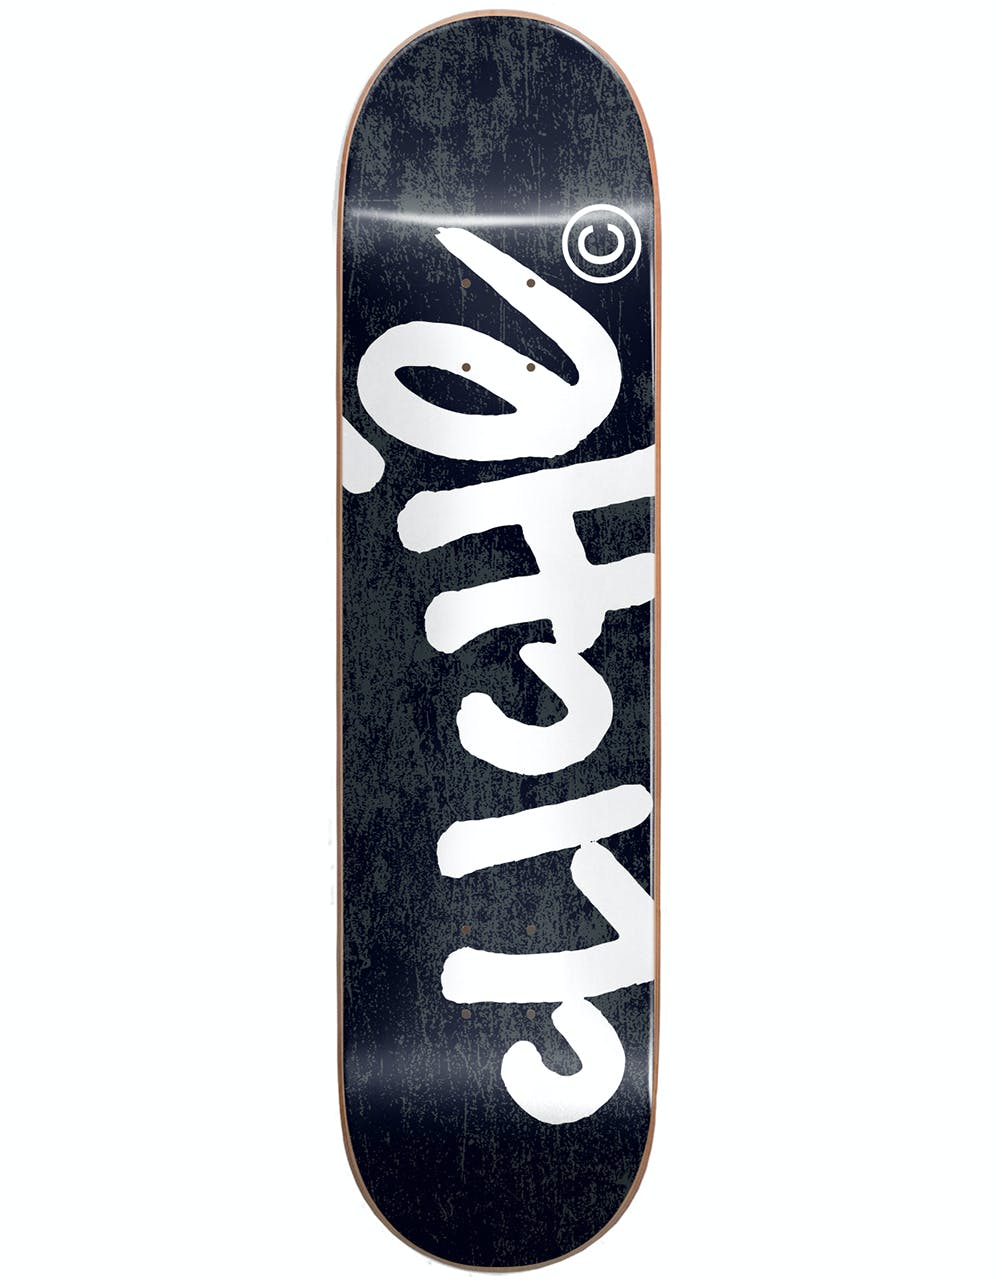 Cliché Handwritten RHM Skateboard Deck - 8.5"